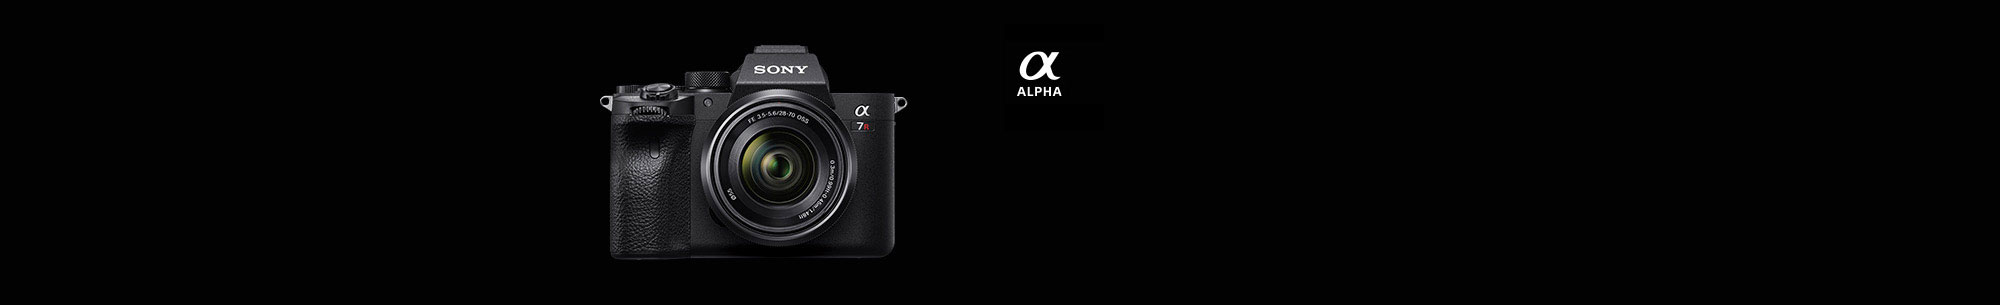 Camera, Alpha series camera logo